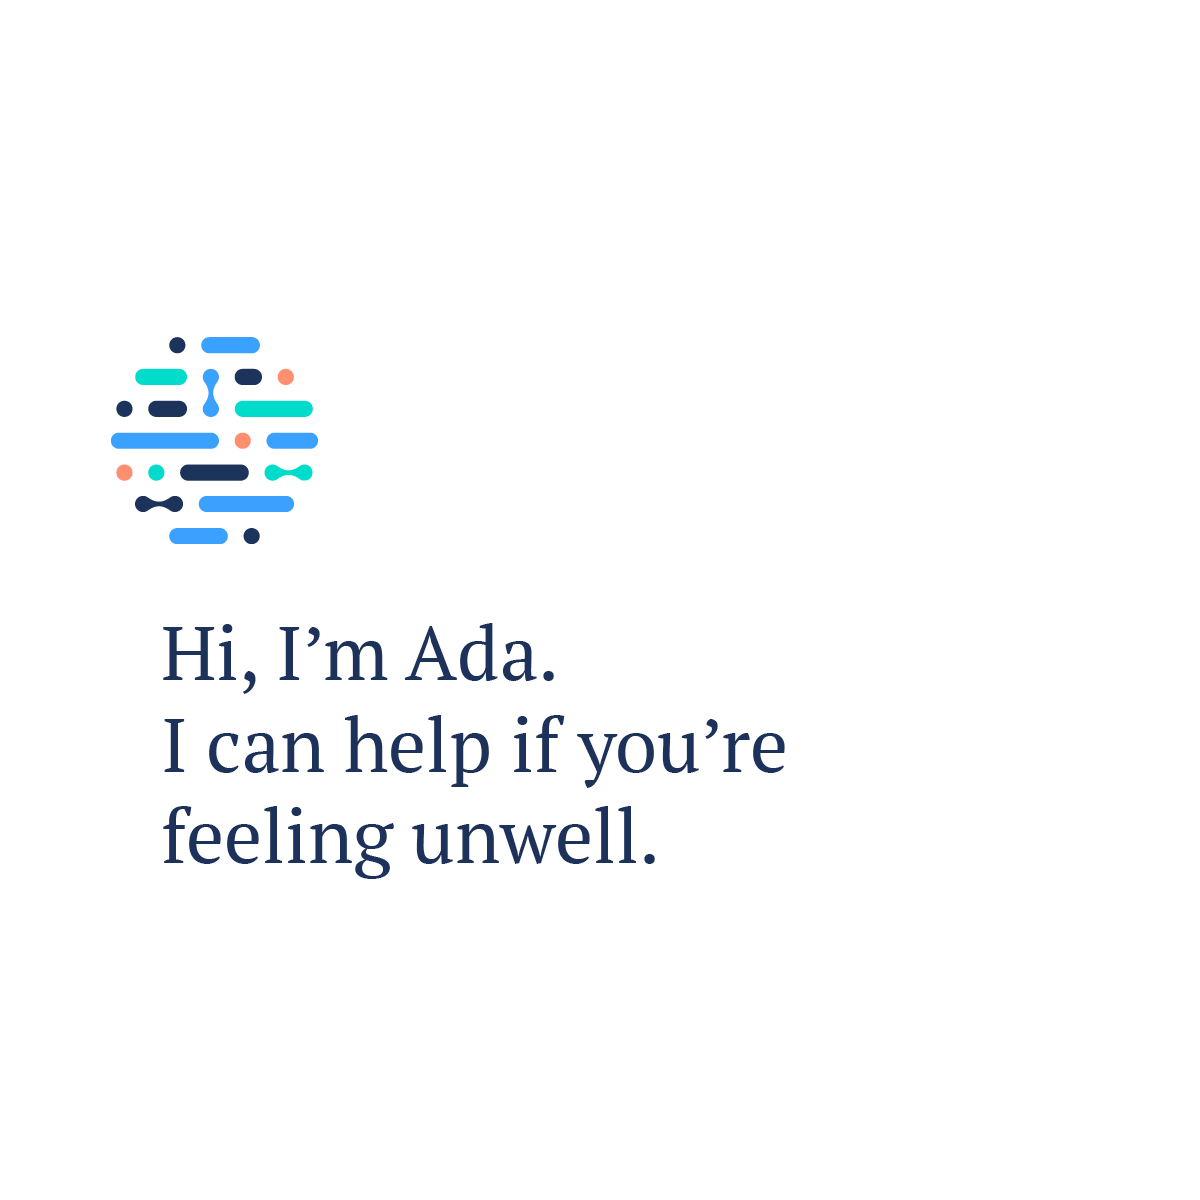 Meet Ada, your new doctor